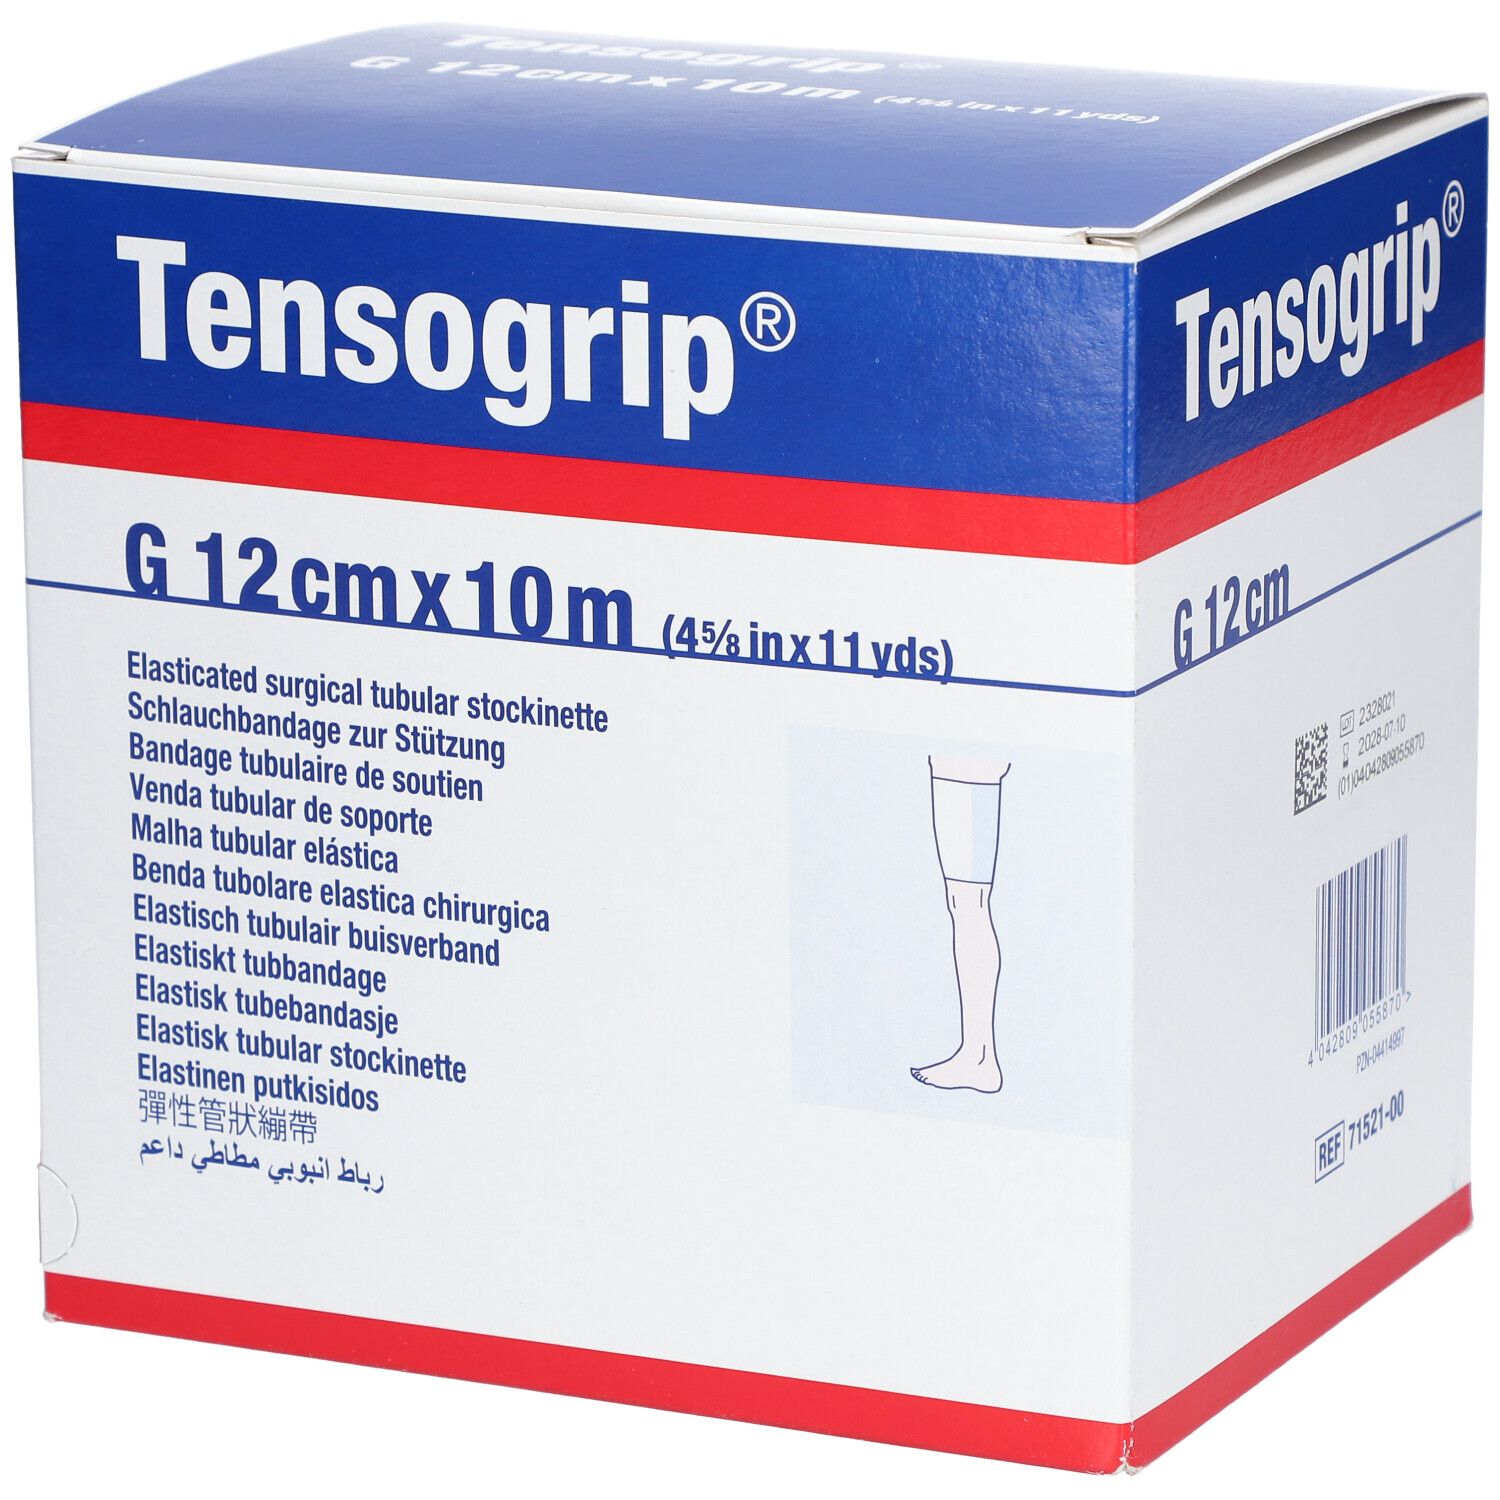 Tensiogrip® G 12 cm x 10 m